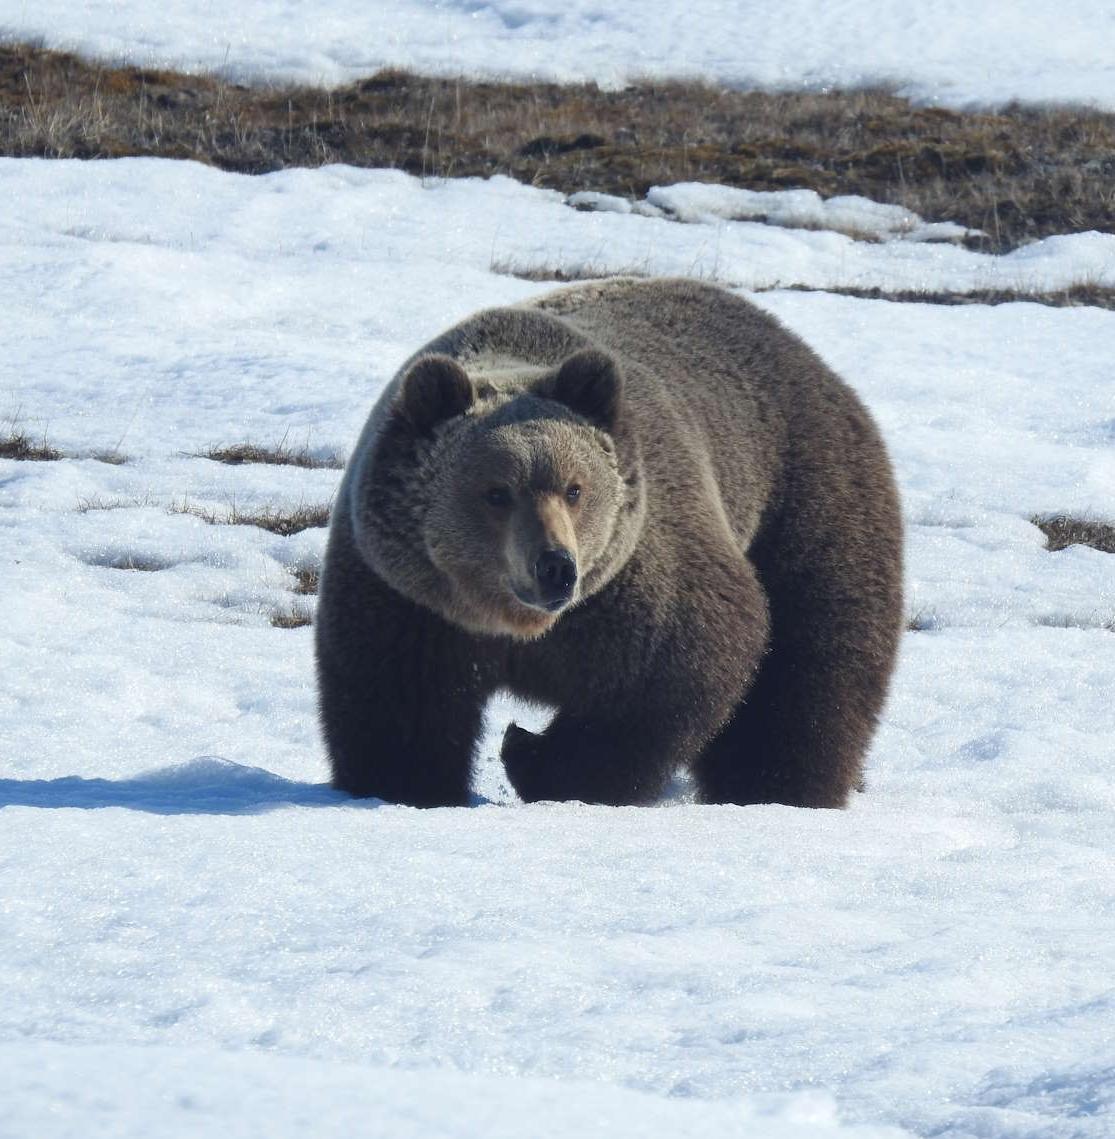 Ученые наблюдают за бурым медведем, который поселился в Арктике 